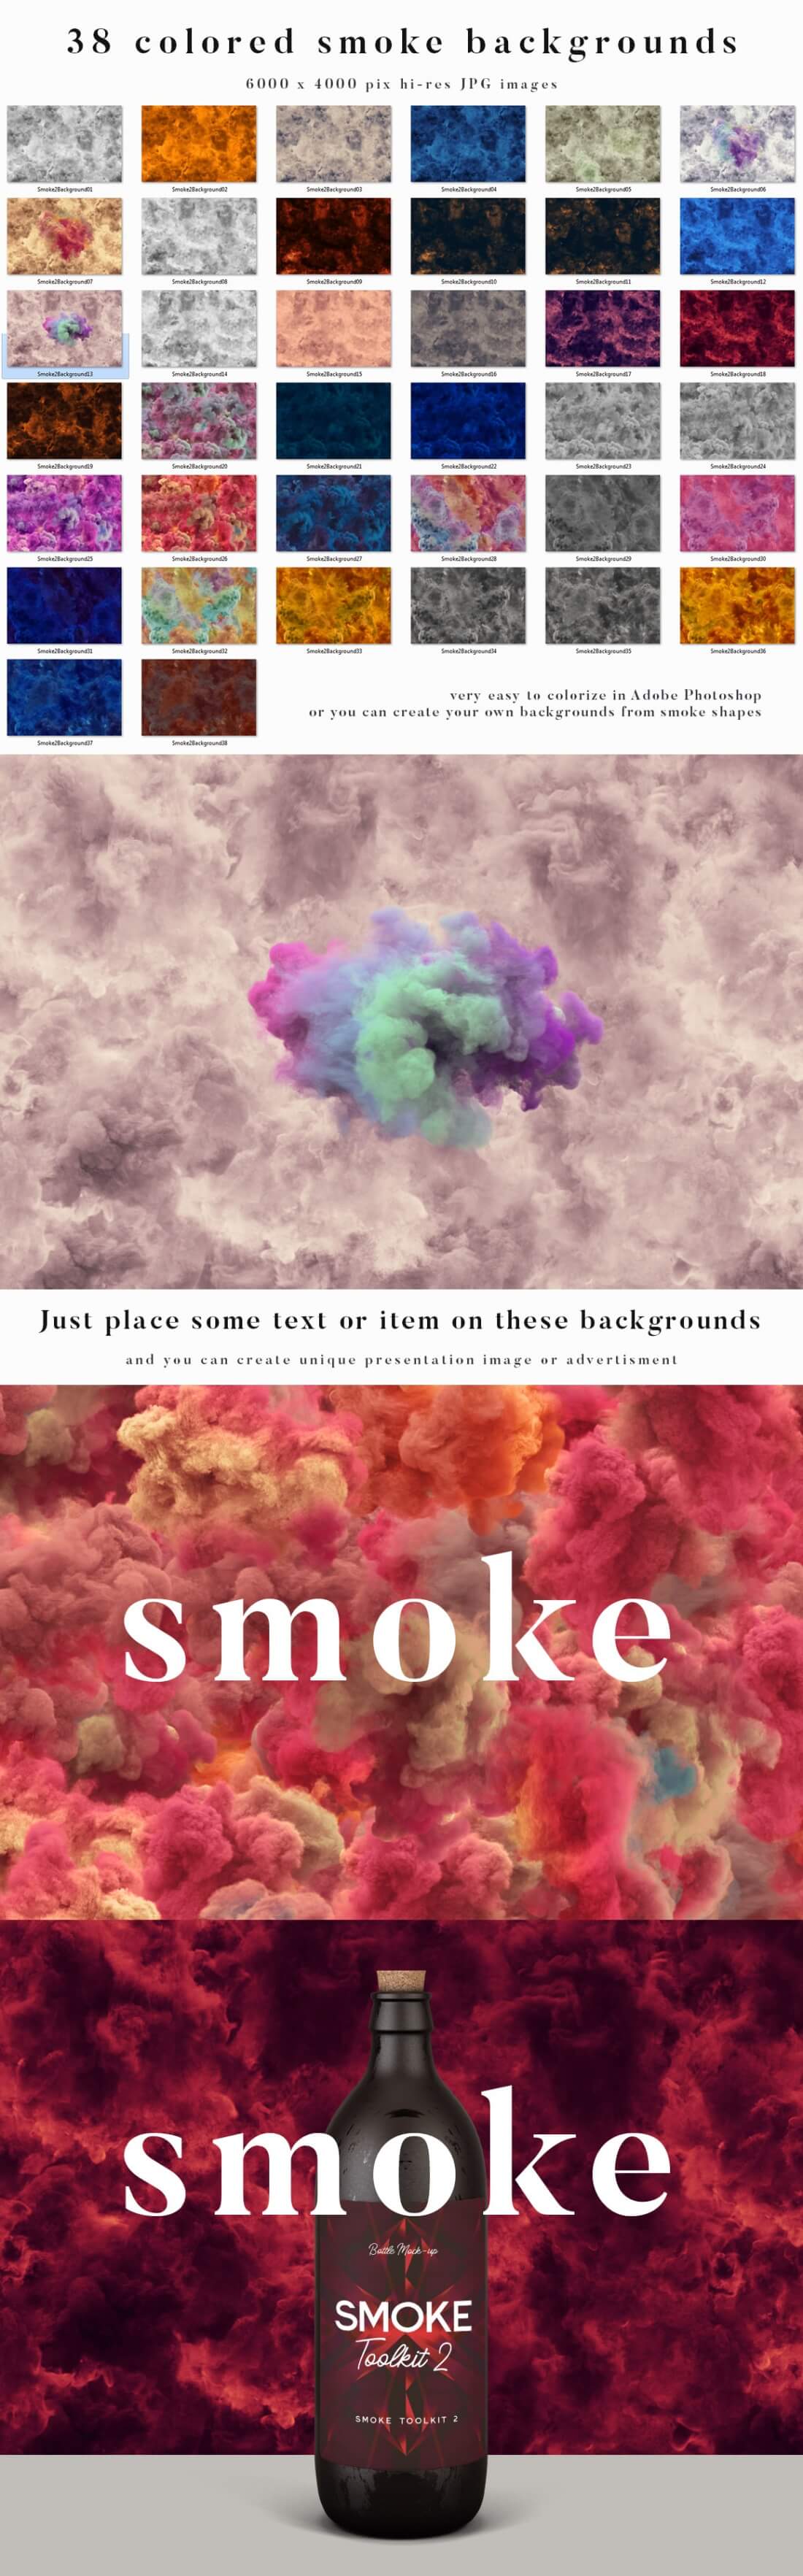 SmokeToolkit7.jpg